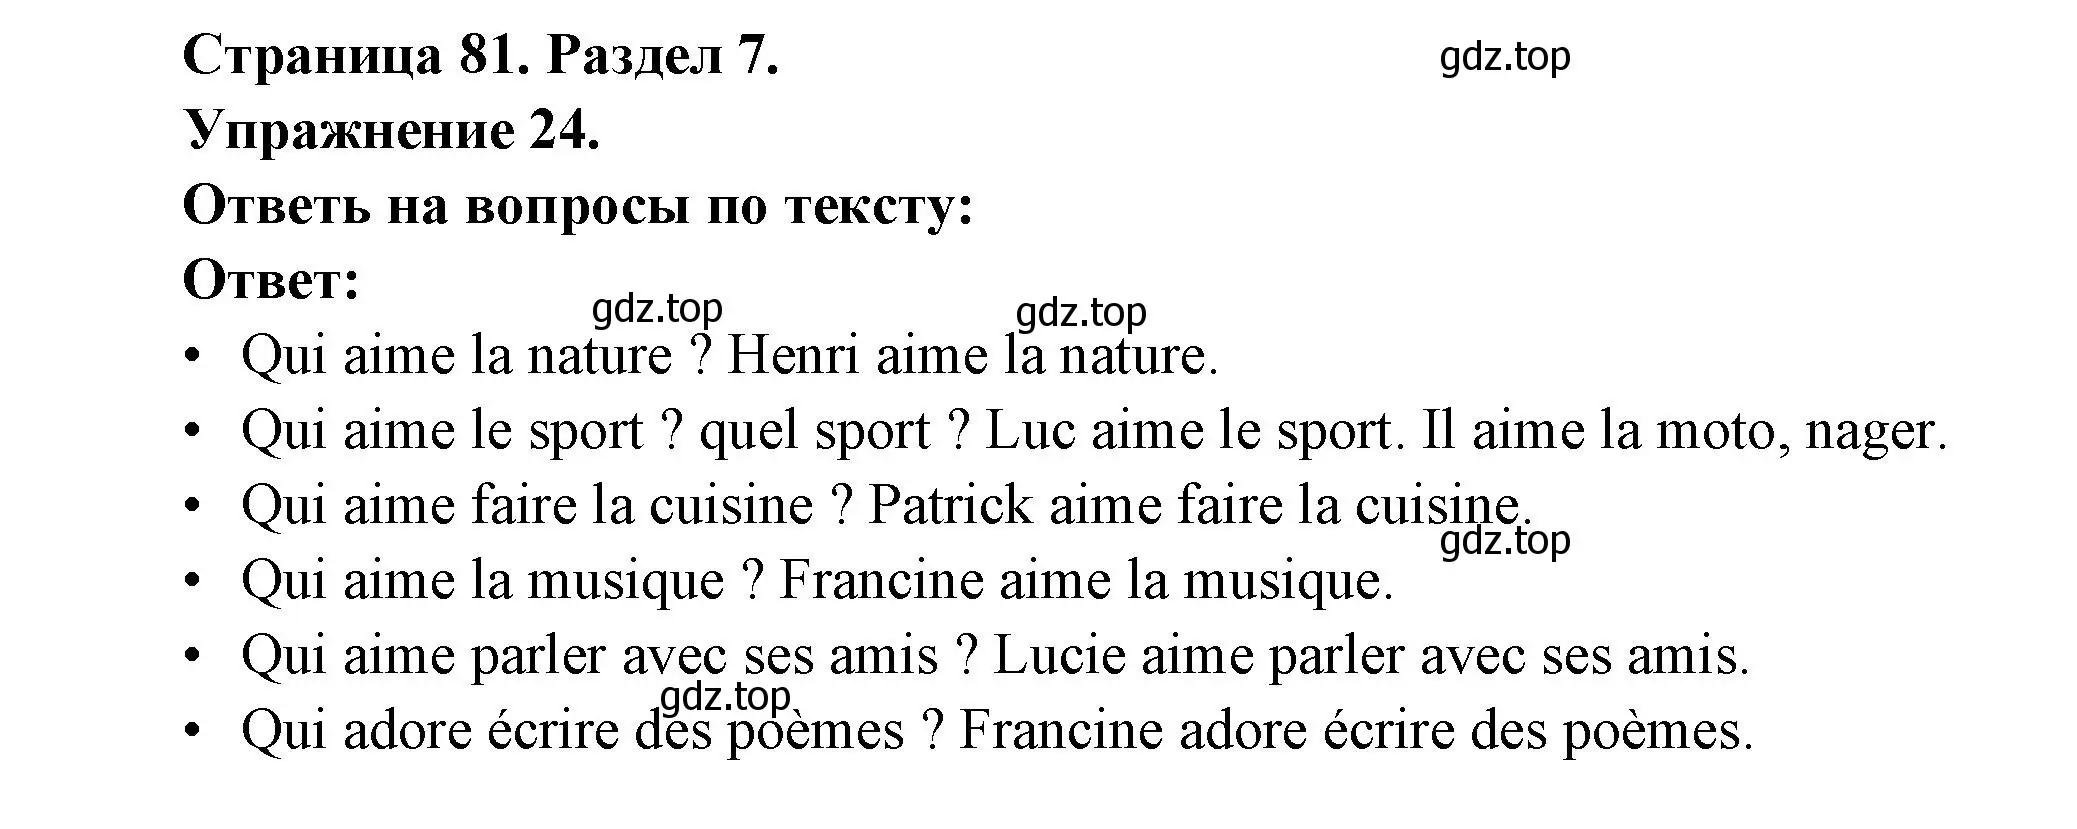 Решение номер 24 (страница 81) гдз по французскому языку 5 класс Береговская, Белосельская, учебник 2 часть